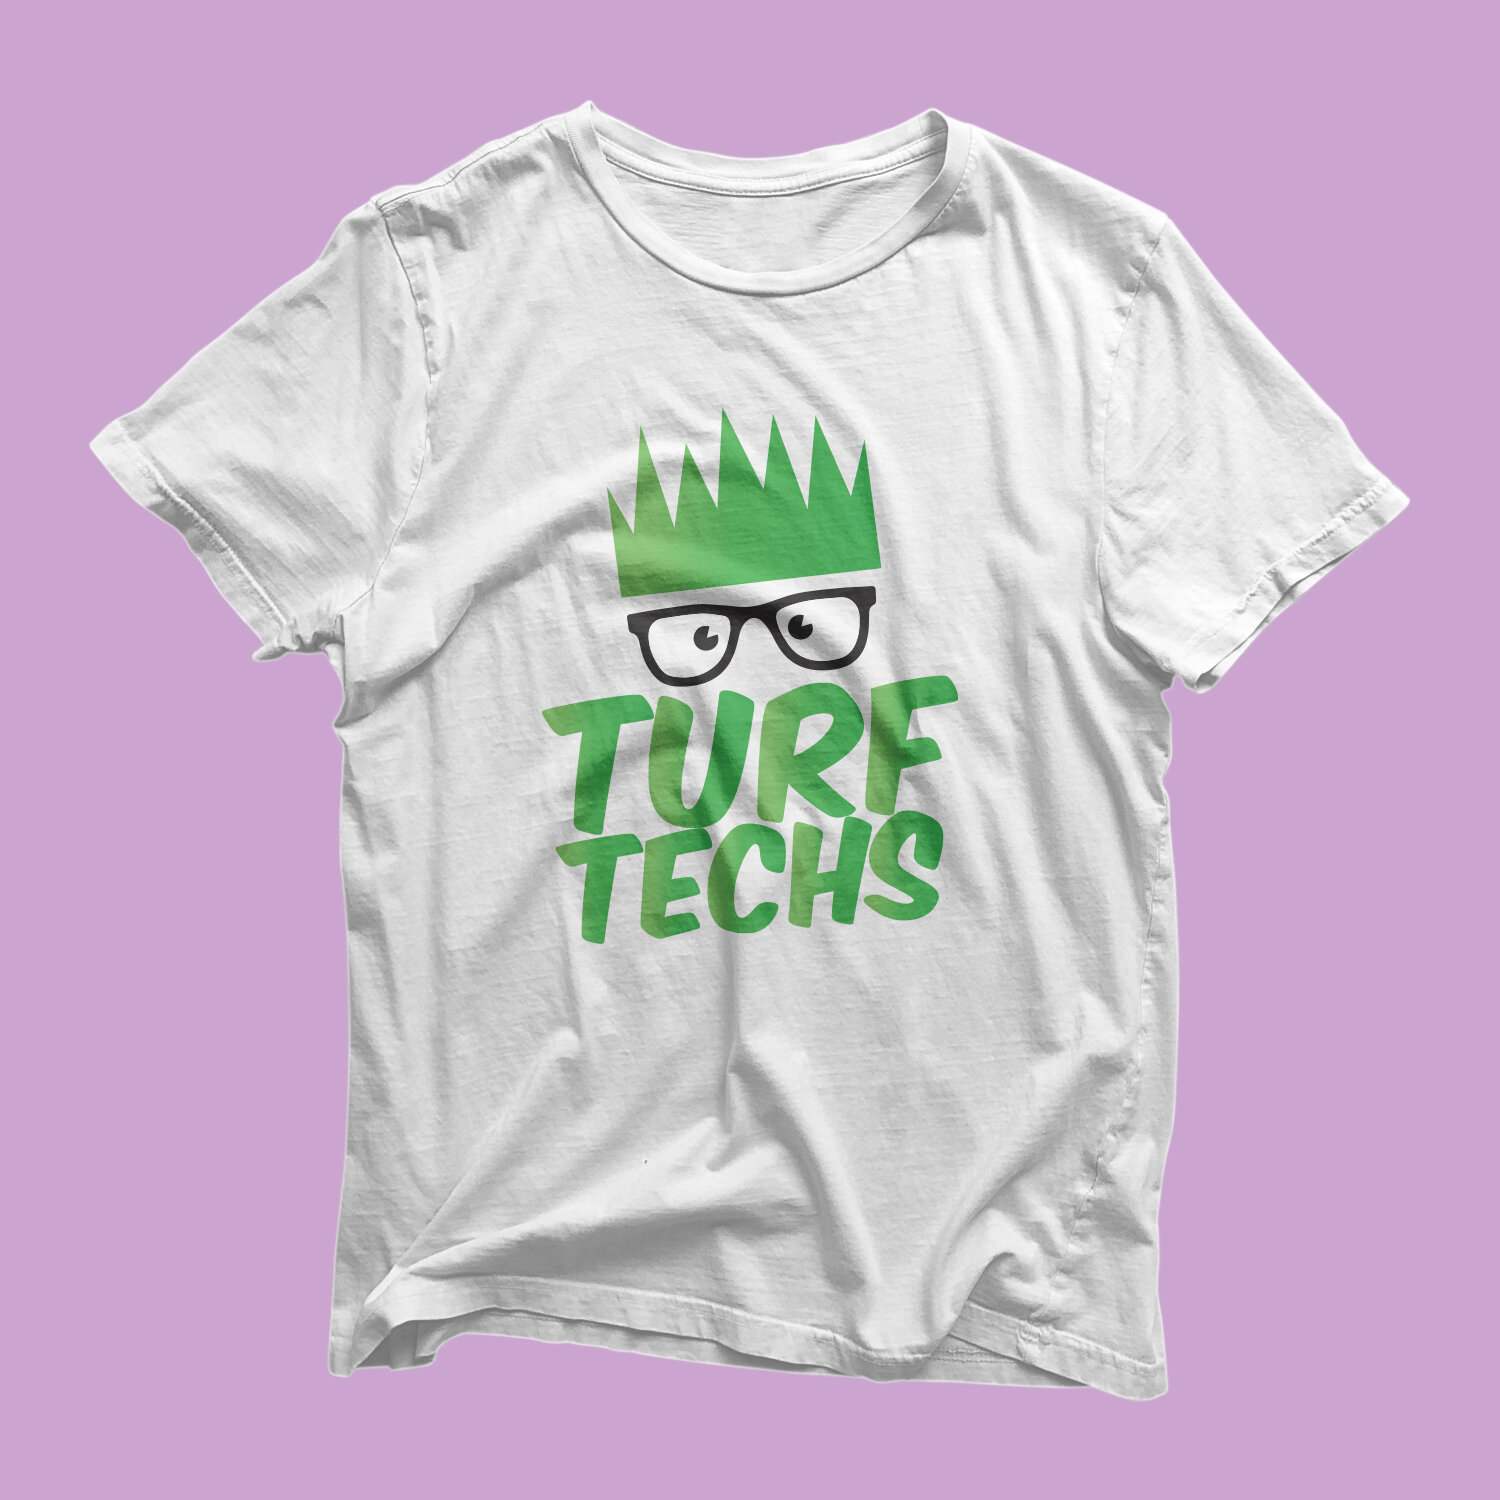 Turf-Techs-Tshirt.jpg